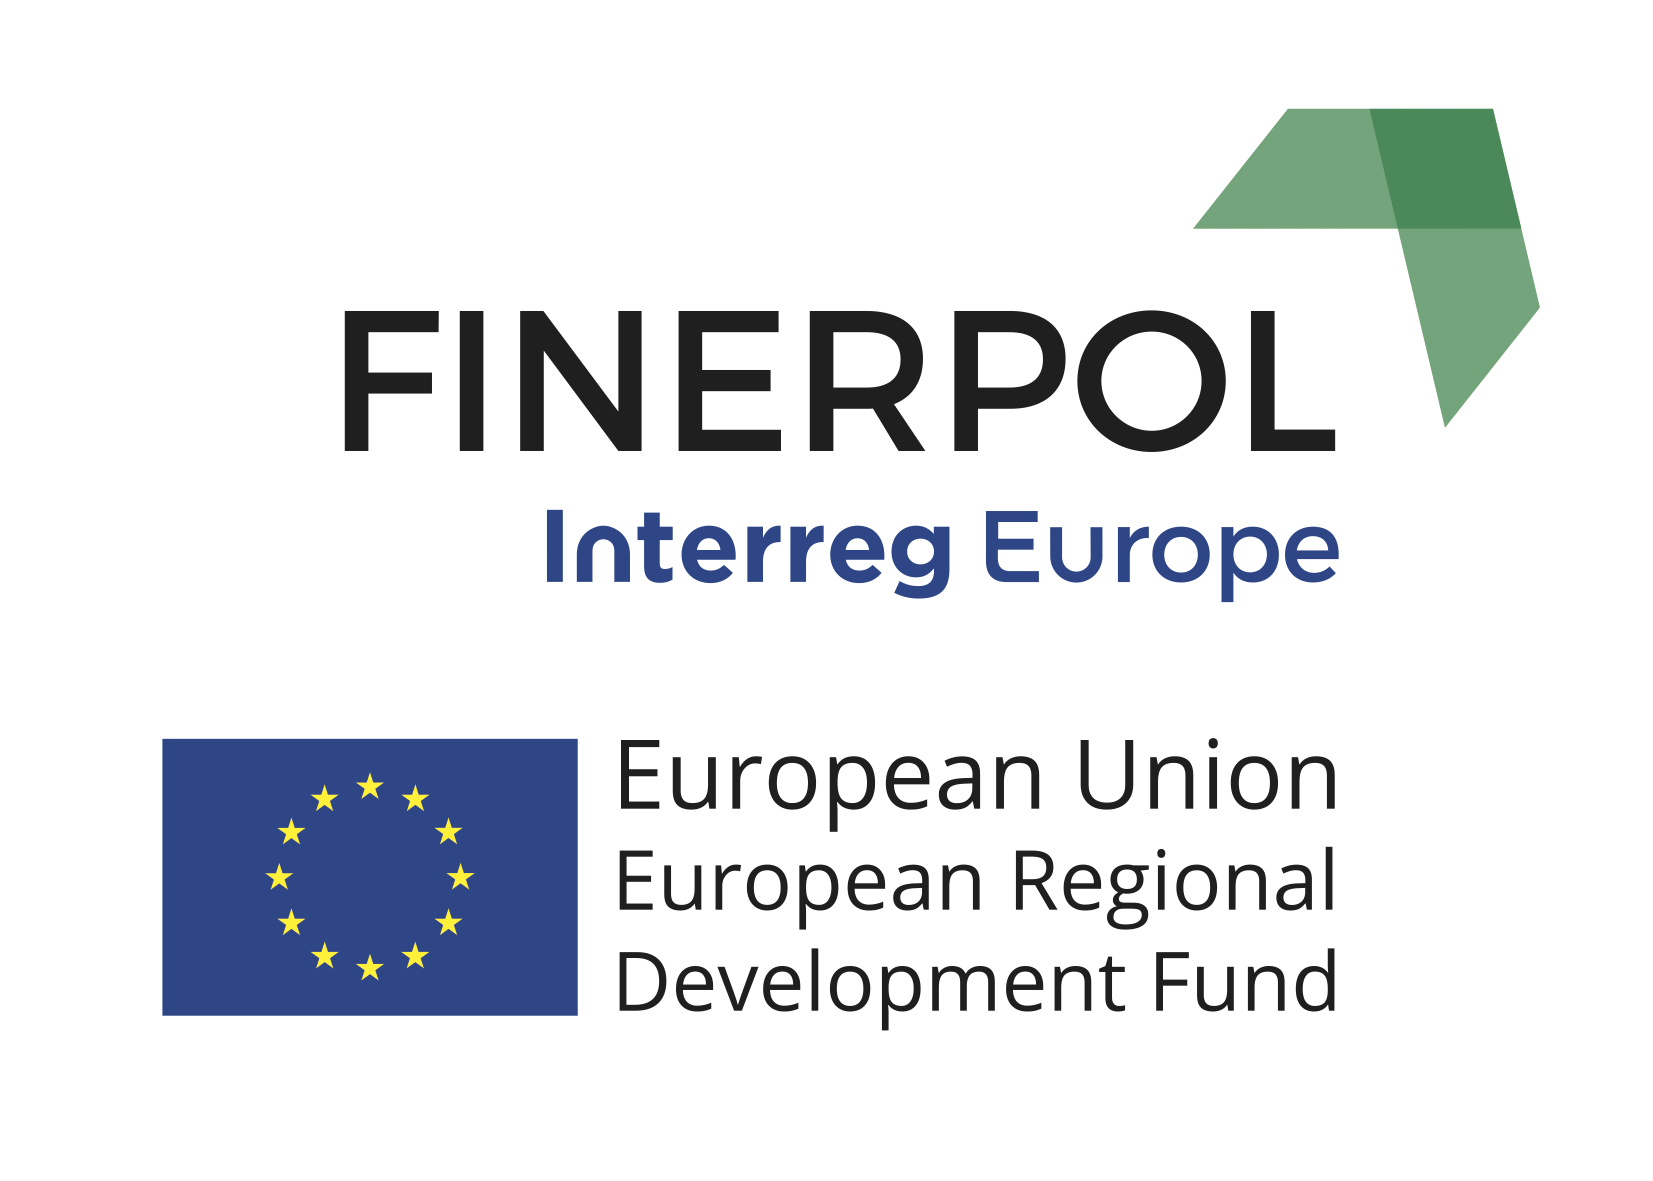 Zástupce projektu FINERPOL se zúčastnil konference Interreg Europe na Maltě